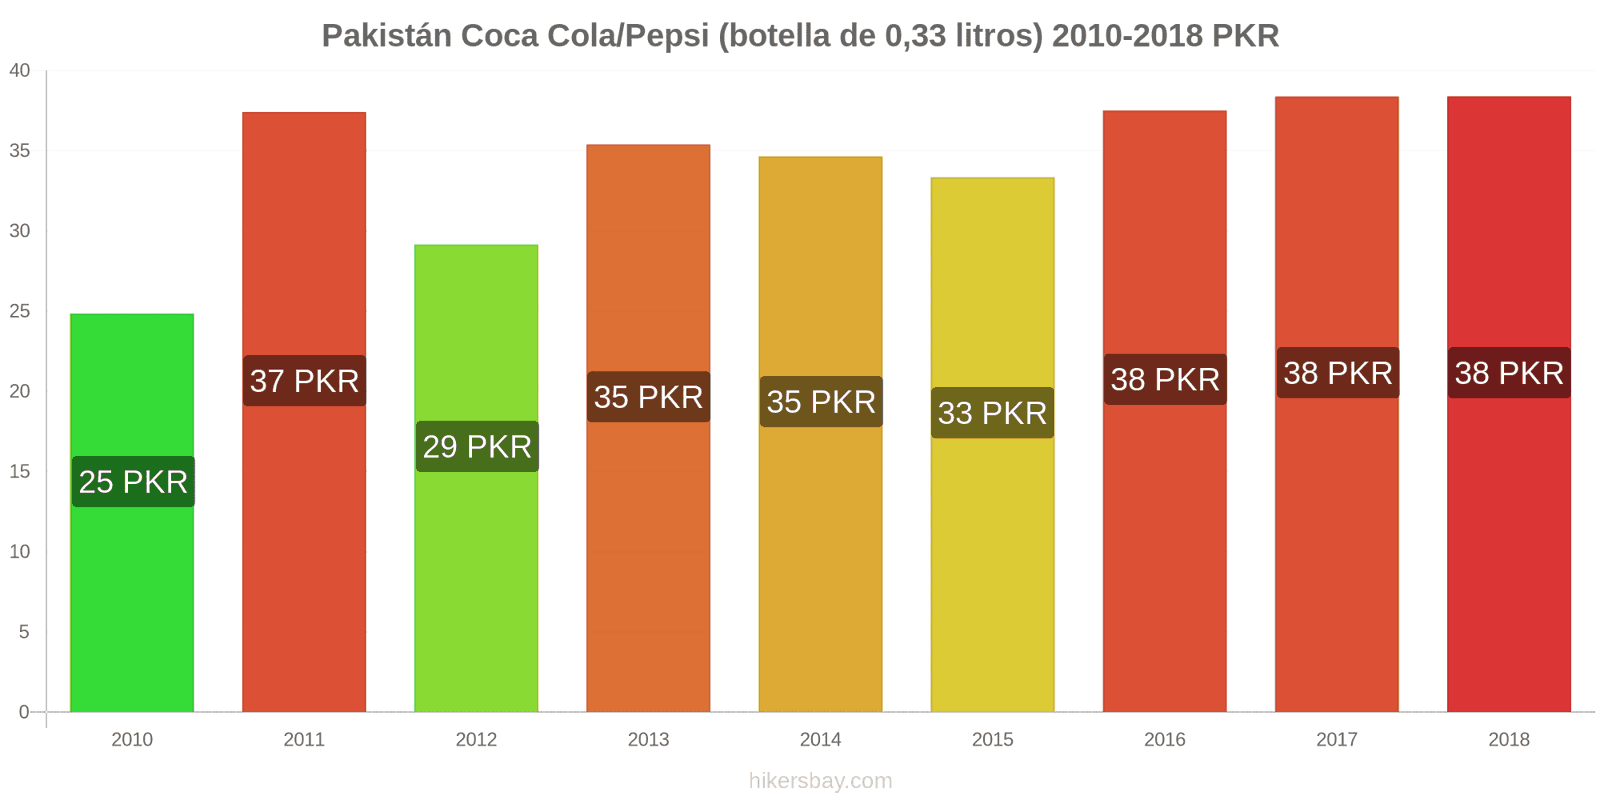 Pakistán cambios de precios Coca-Cola/Pepsi (botella de 0.33 litros) hikersbay.com